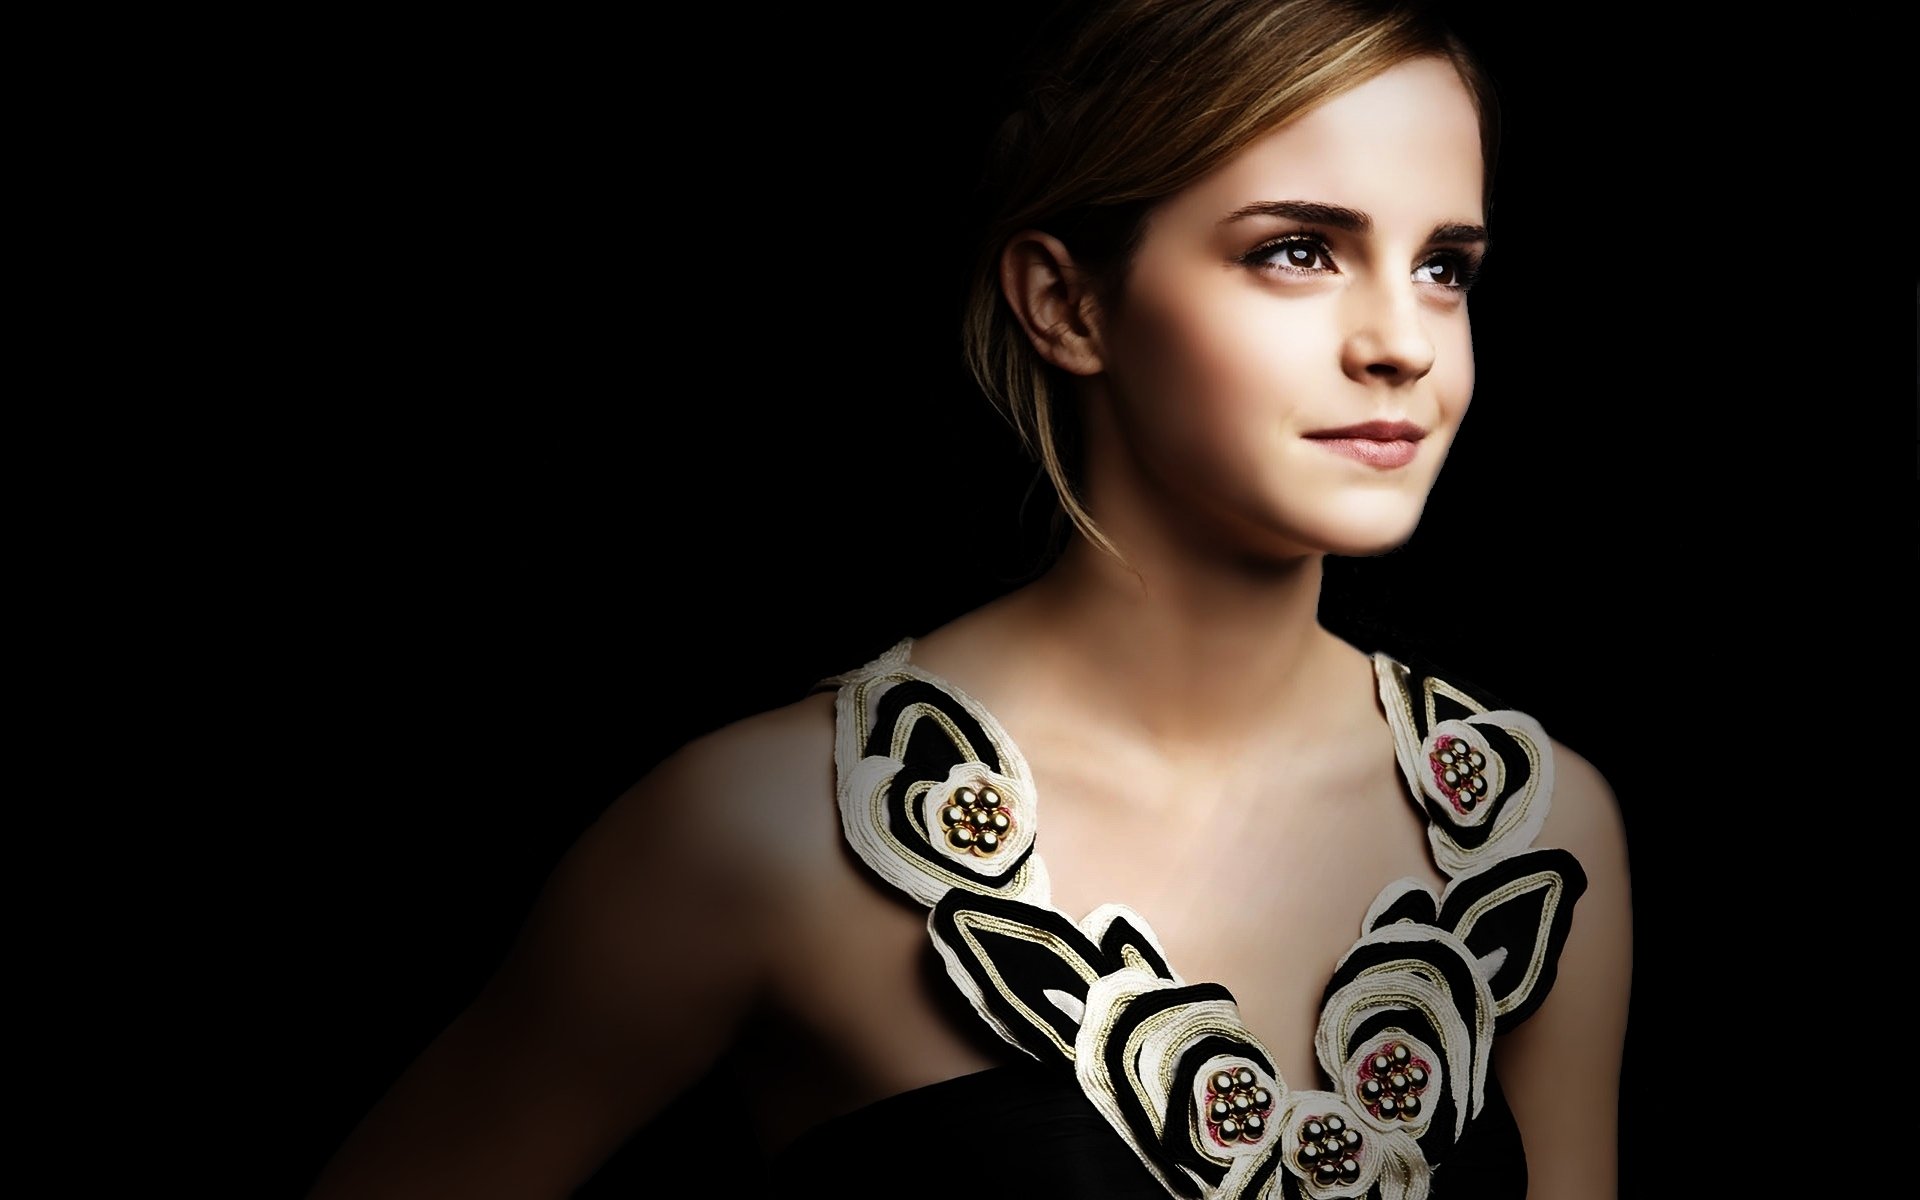 645 Emma Watson Fondos de pantalla HD | Imágenes de fondo